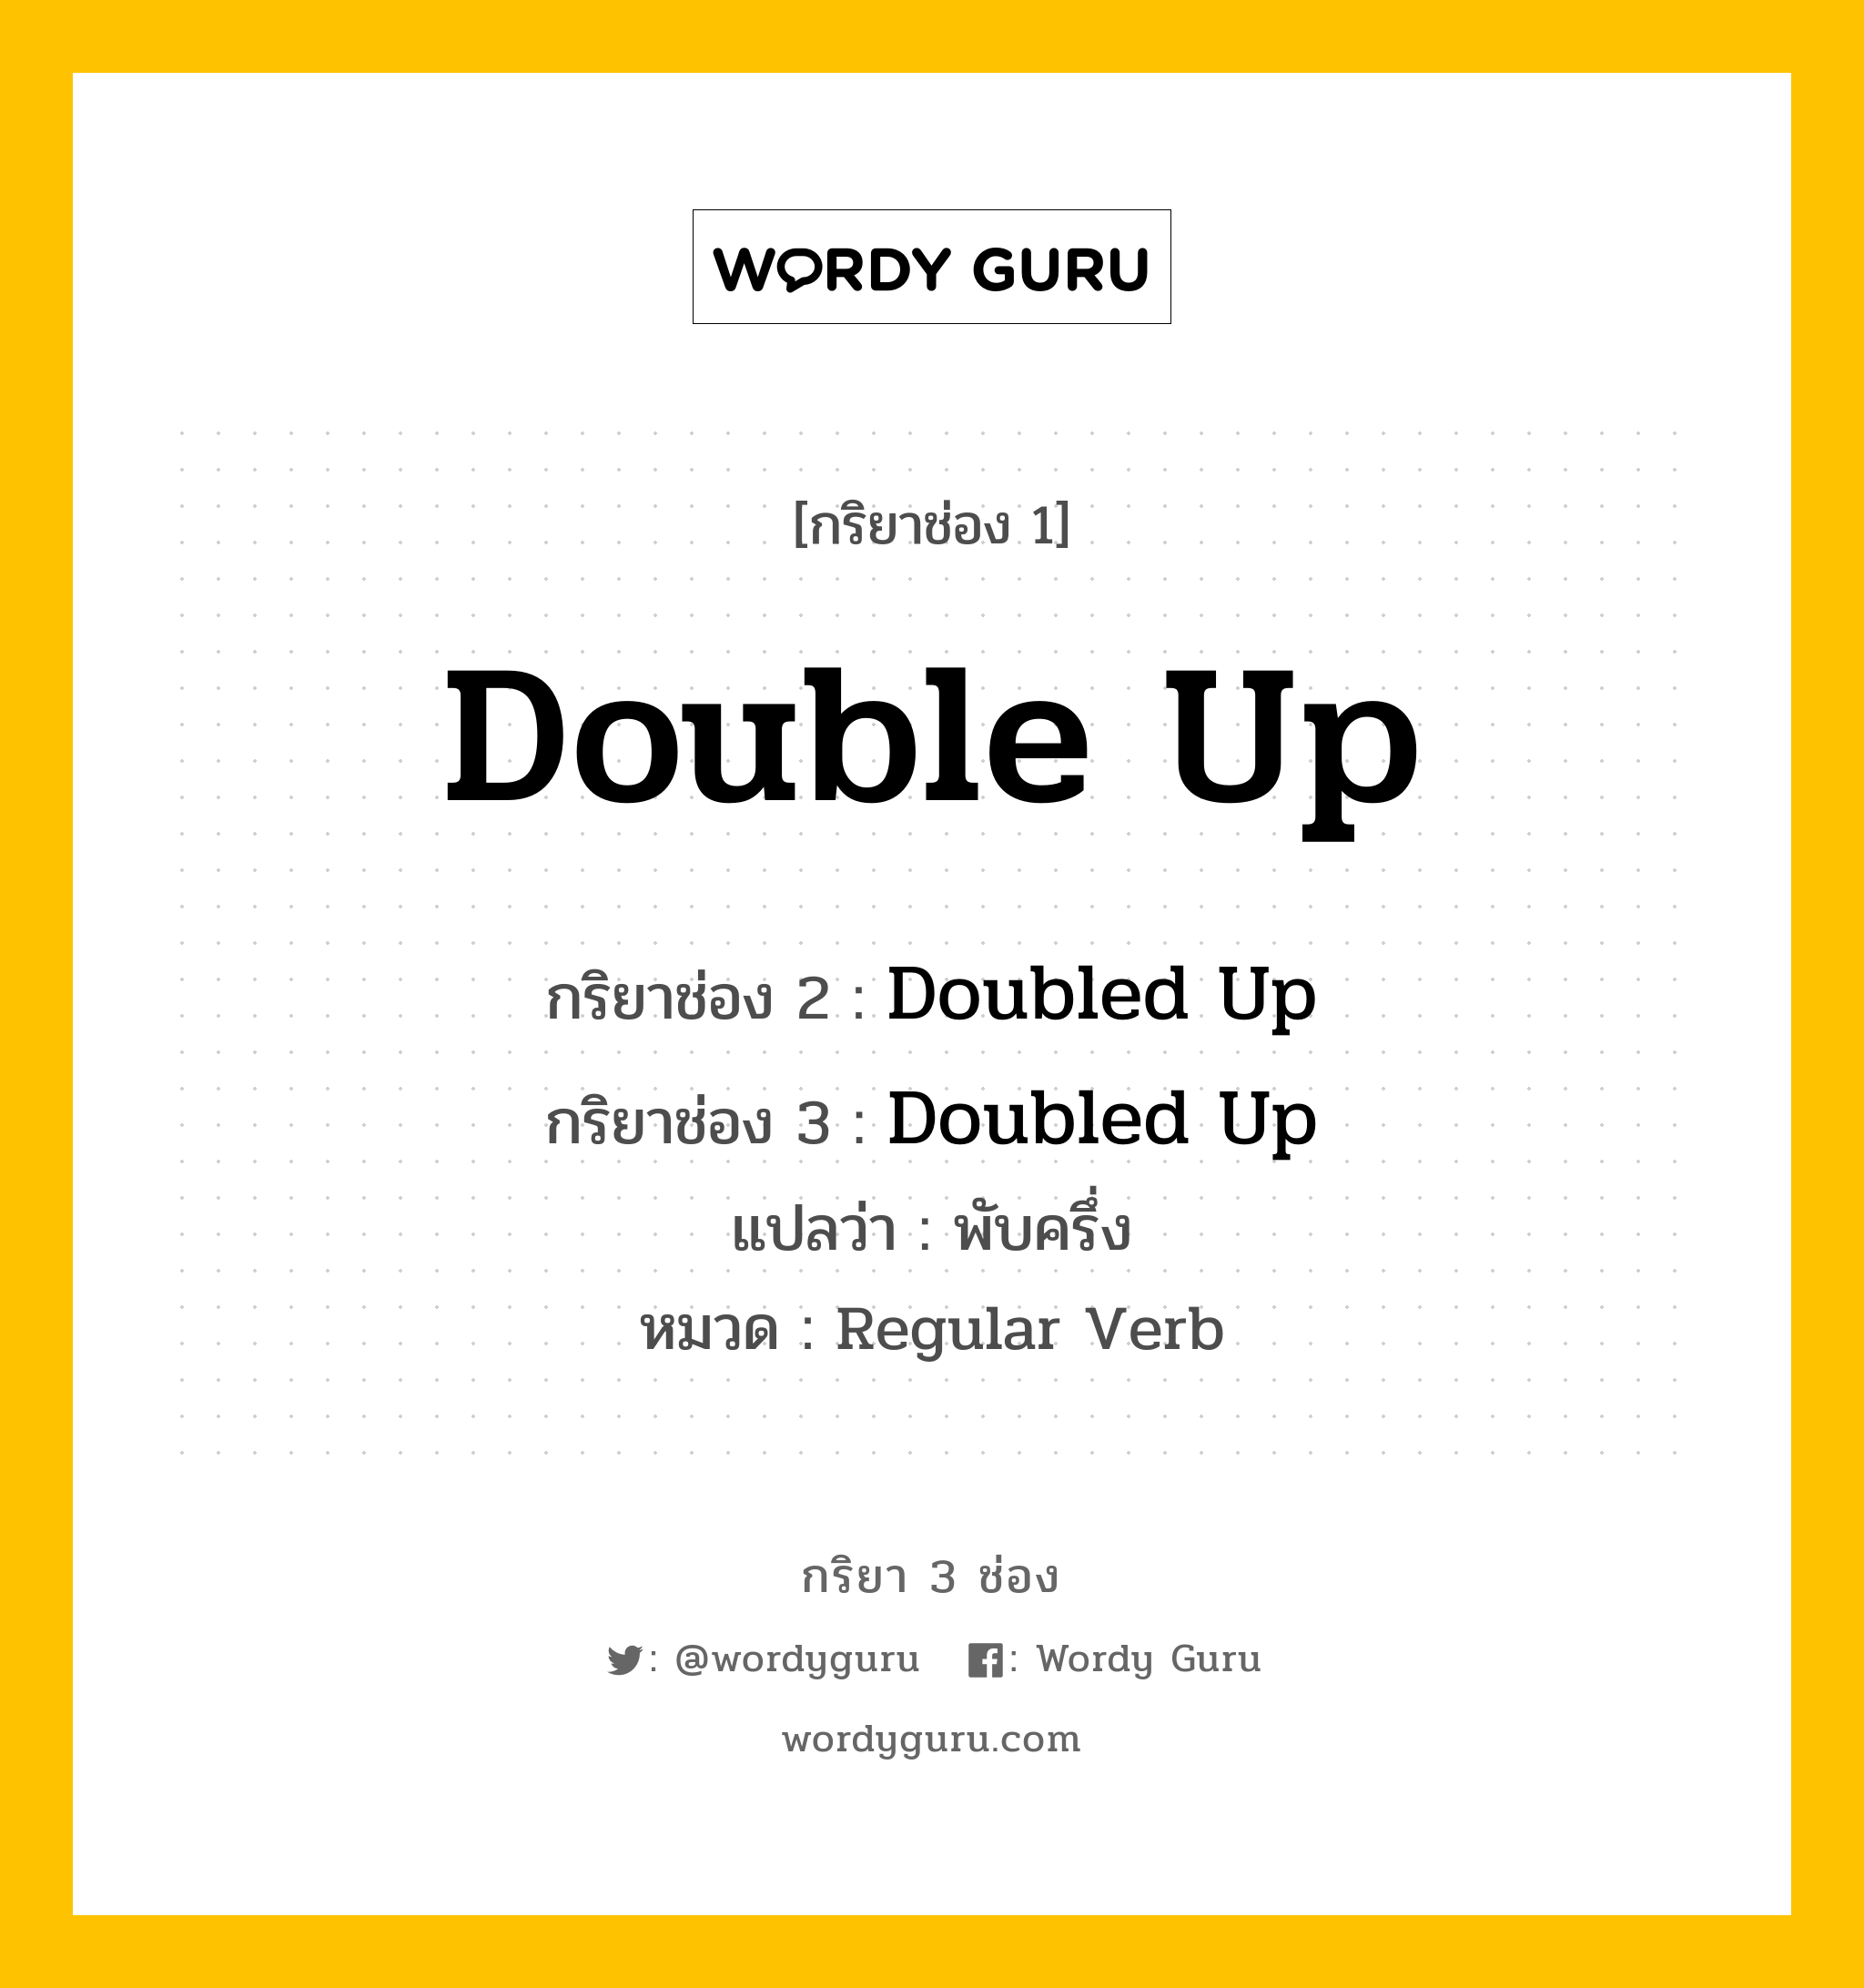 กริยา 3 ช่อง ของ Double Up คืออะไร? มาดูคำอ่าน คำแปลกันเลย, กริยาช่อง 1 Double Up กริยาช่อง 2 Doubled Up กริยาช่อง 3 Doubled Up แปลว่า พับครึ่ง หมวด Regular Verb หมวด Regular Verb